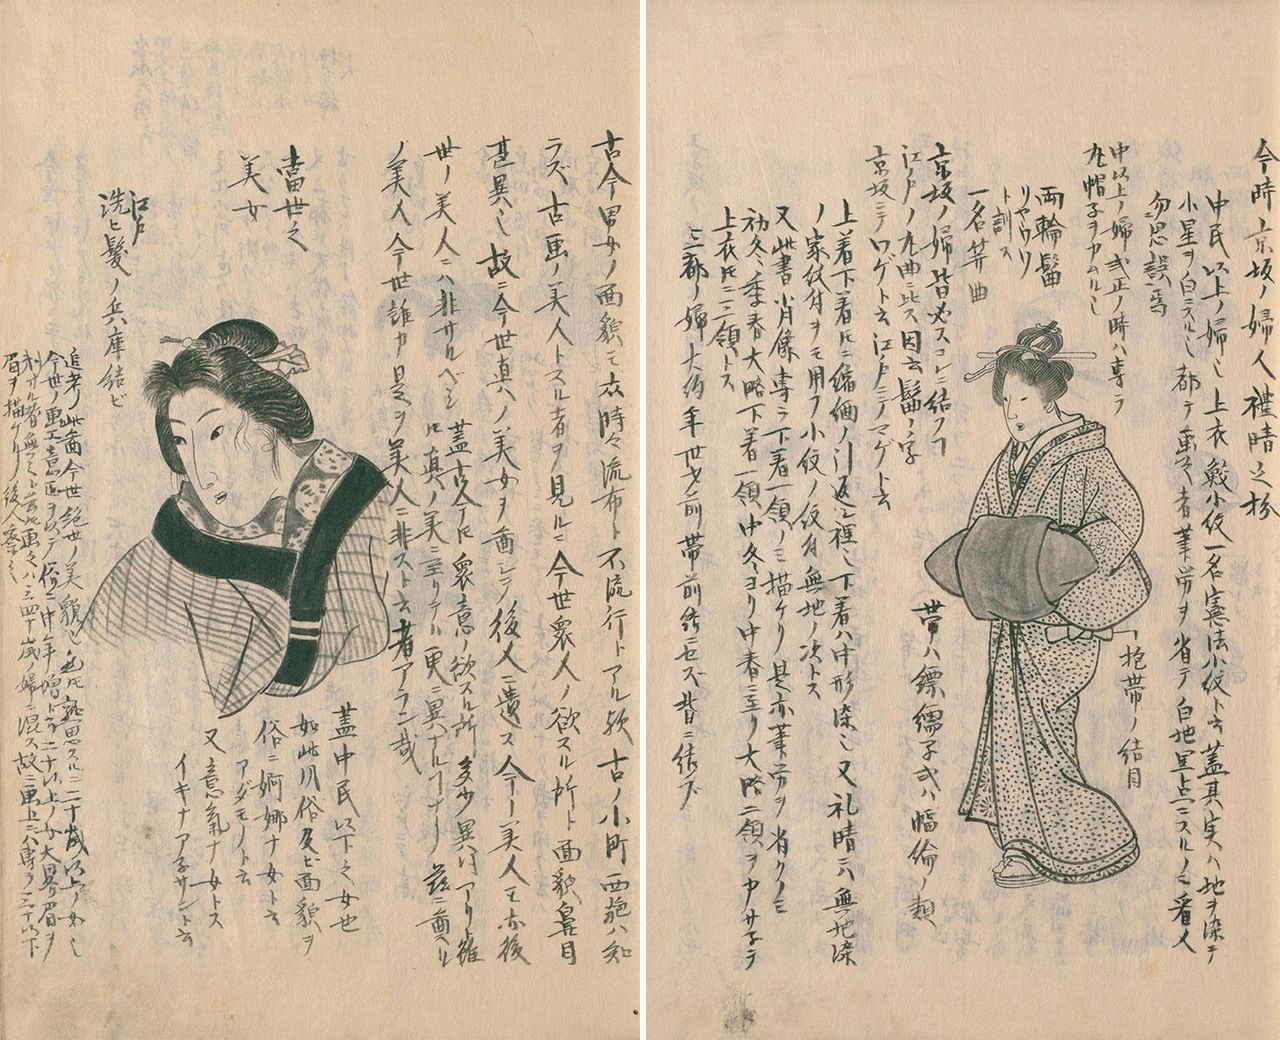 たった一人で私家版百科事典を編んだ男の軌跡 : 幕末の東西文化の違いを記録した『守貞漫稿』（その1） | nippon.com